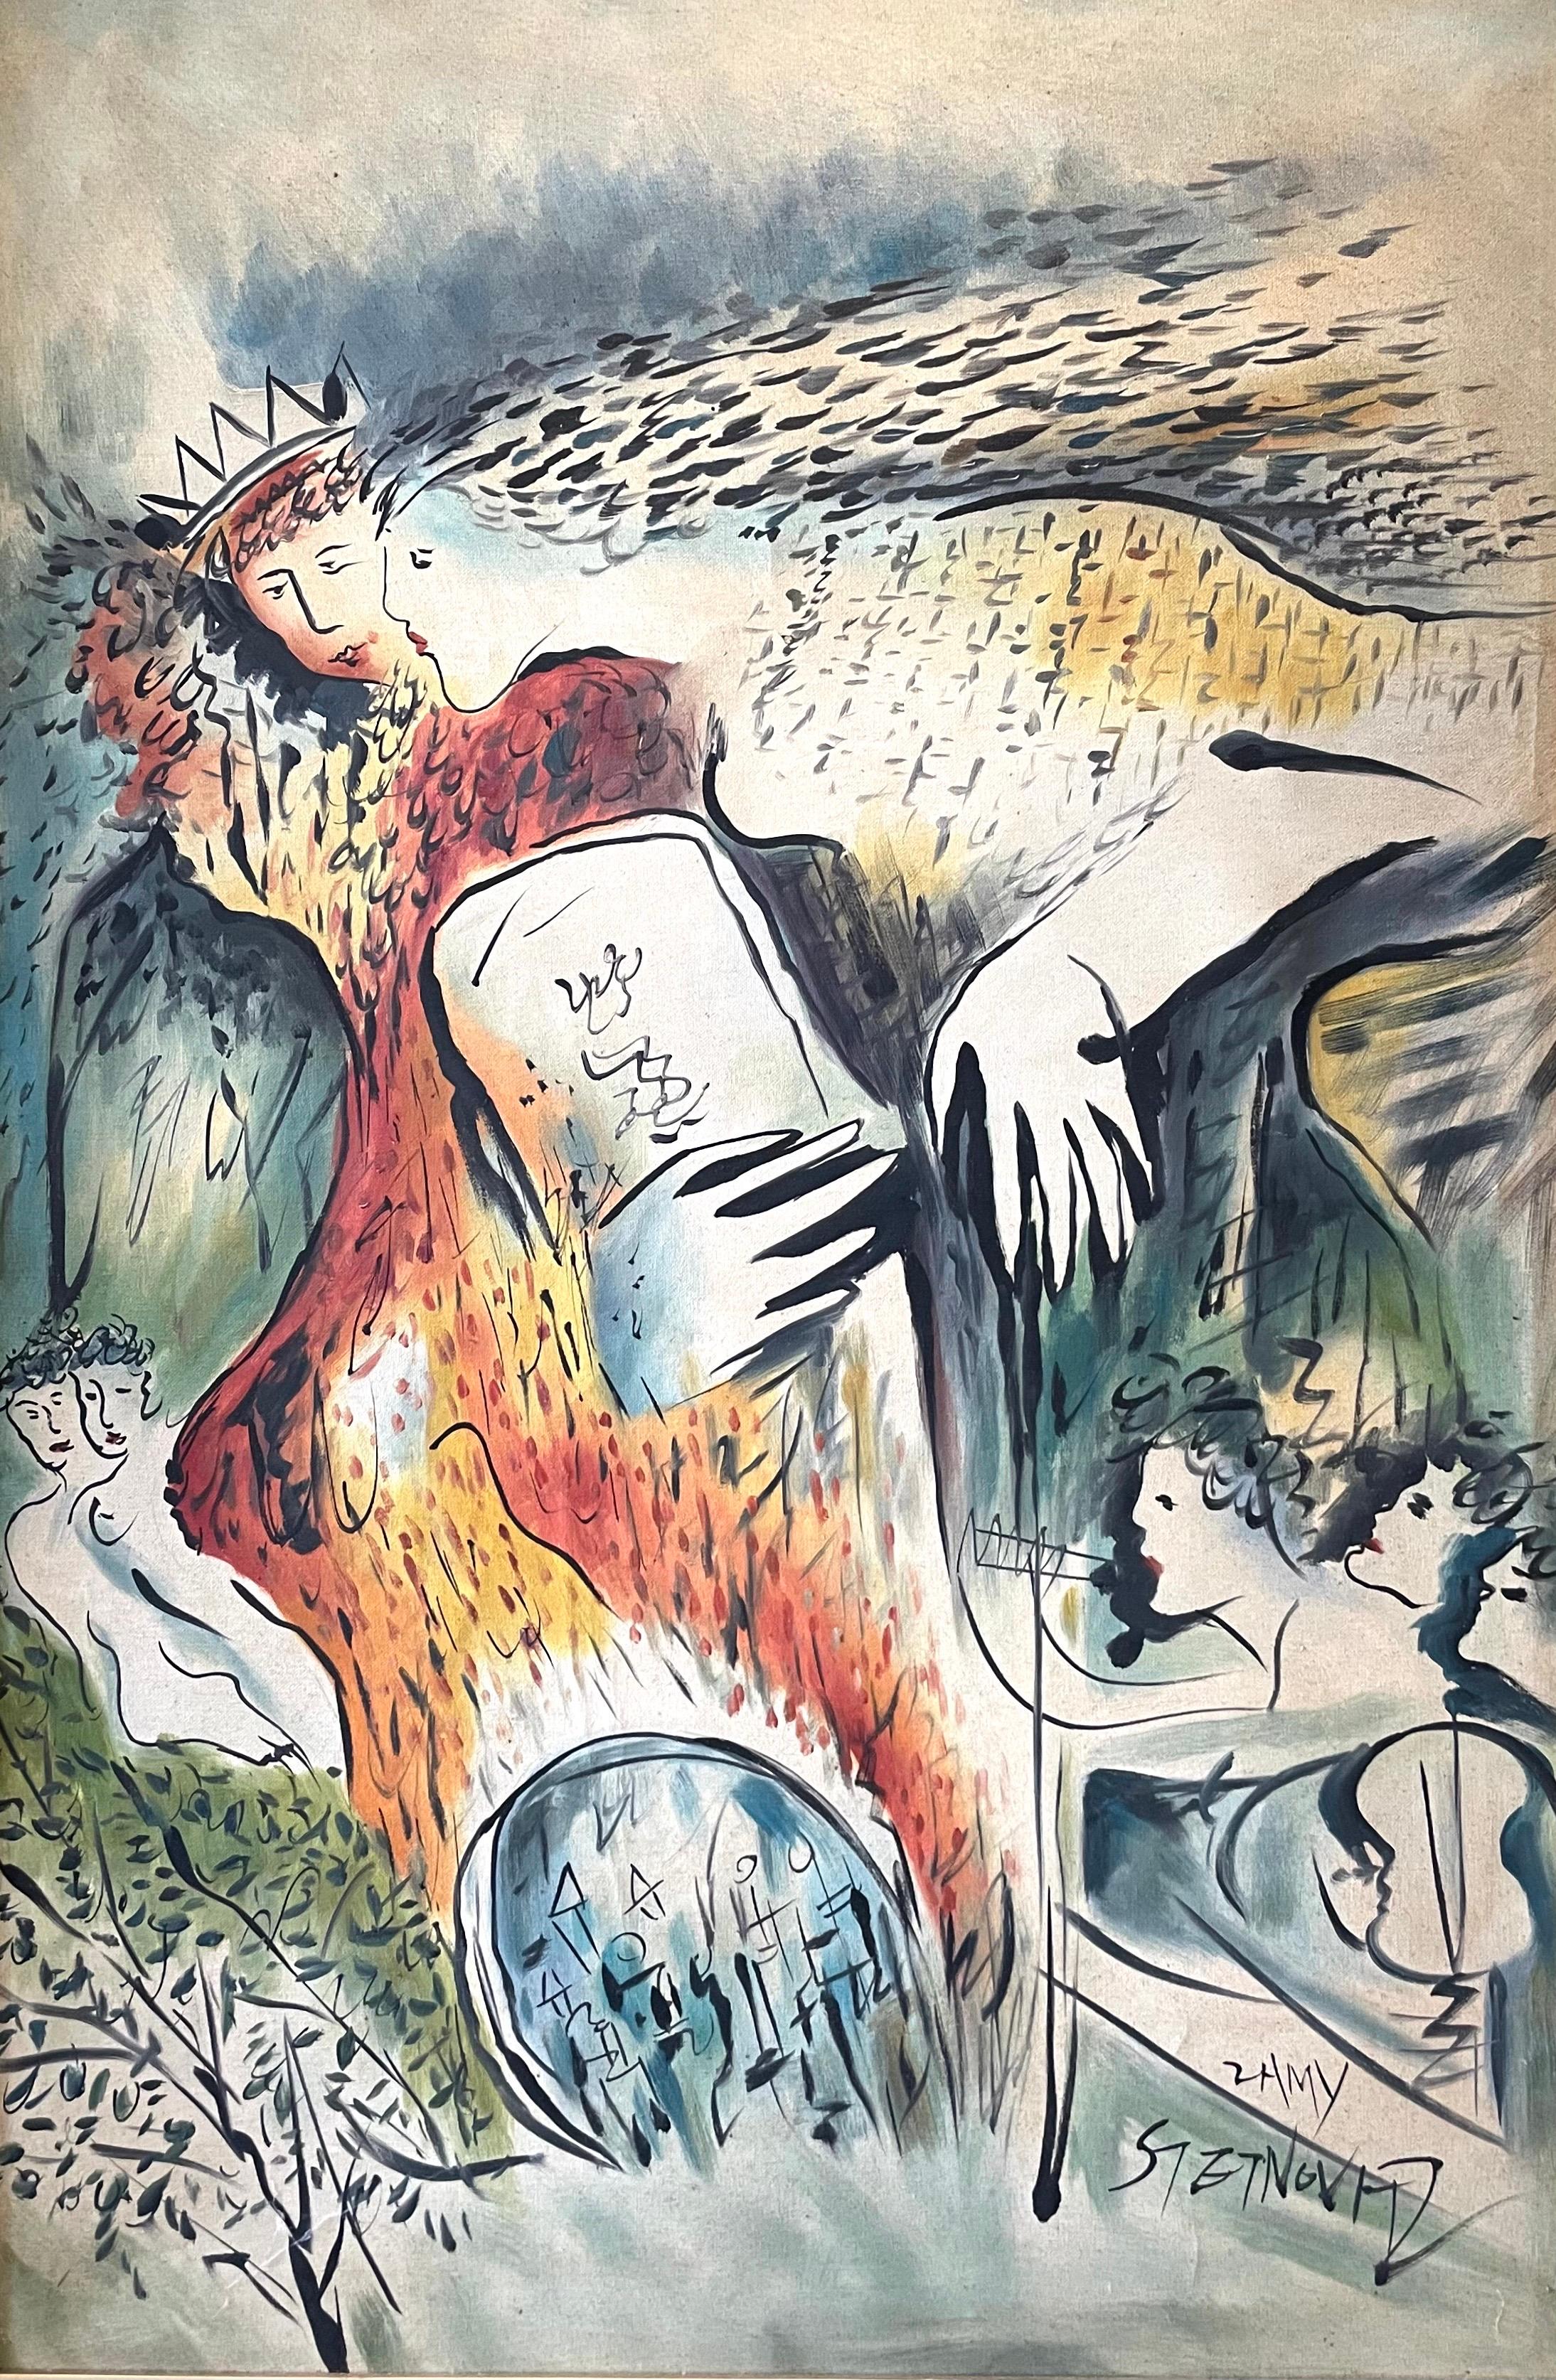 Peinture à l'huile israélienne d'art judaïque du roi David, Jérusalem (d'après Marc Chagall) - Painting de Zammy Steynovitz